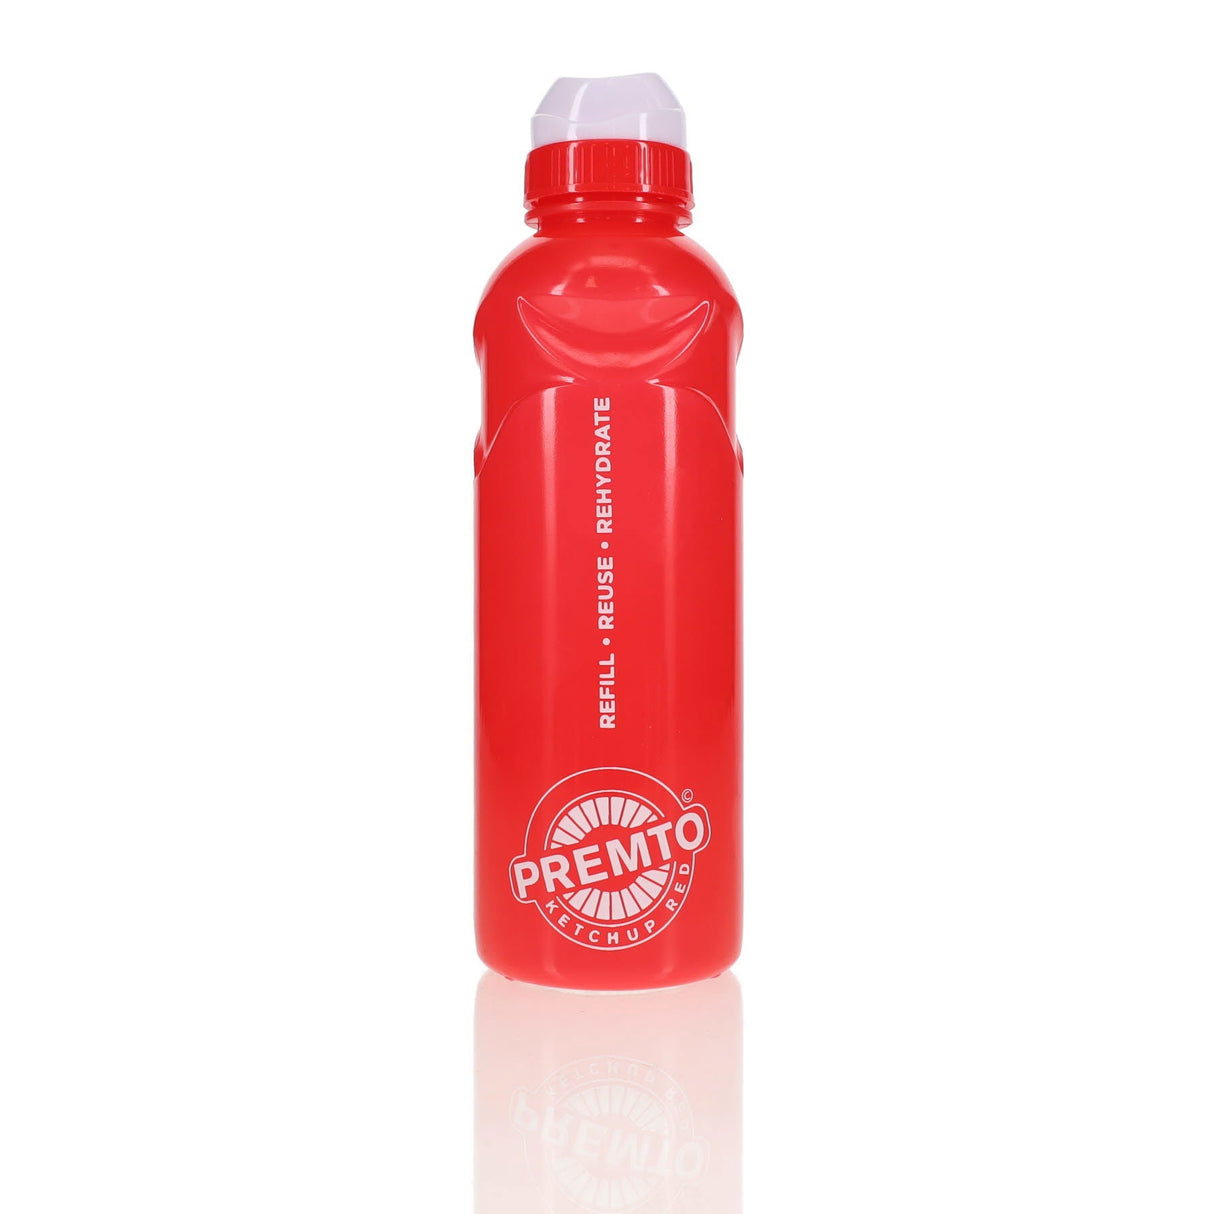 Premto 500ml Stealth Bottle - Ketchup Red | Stationery Shop UK